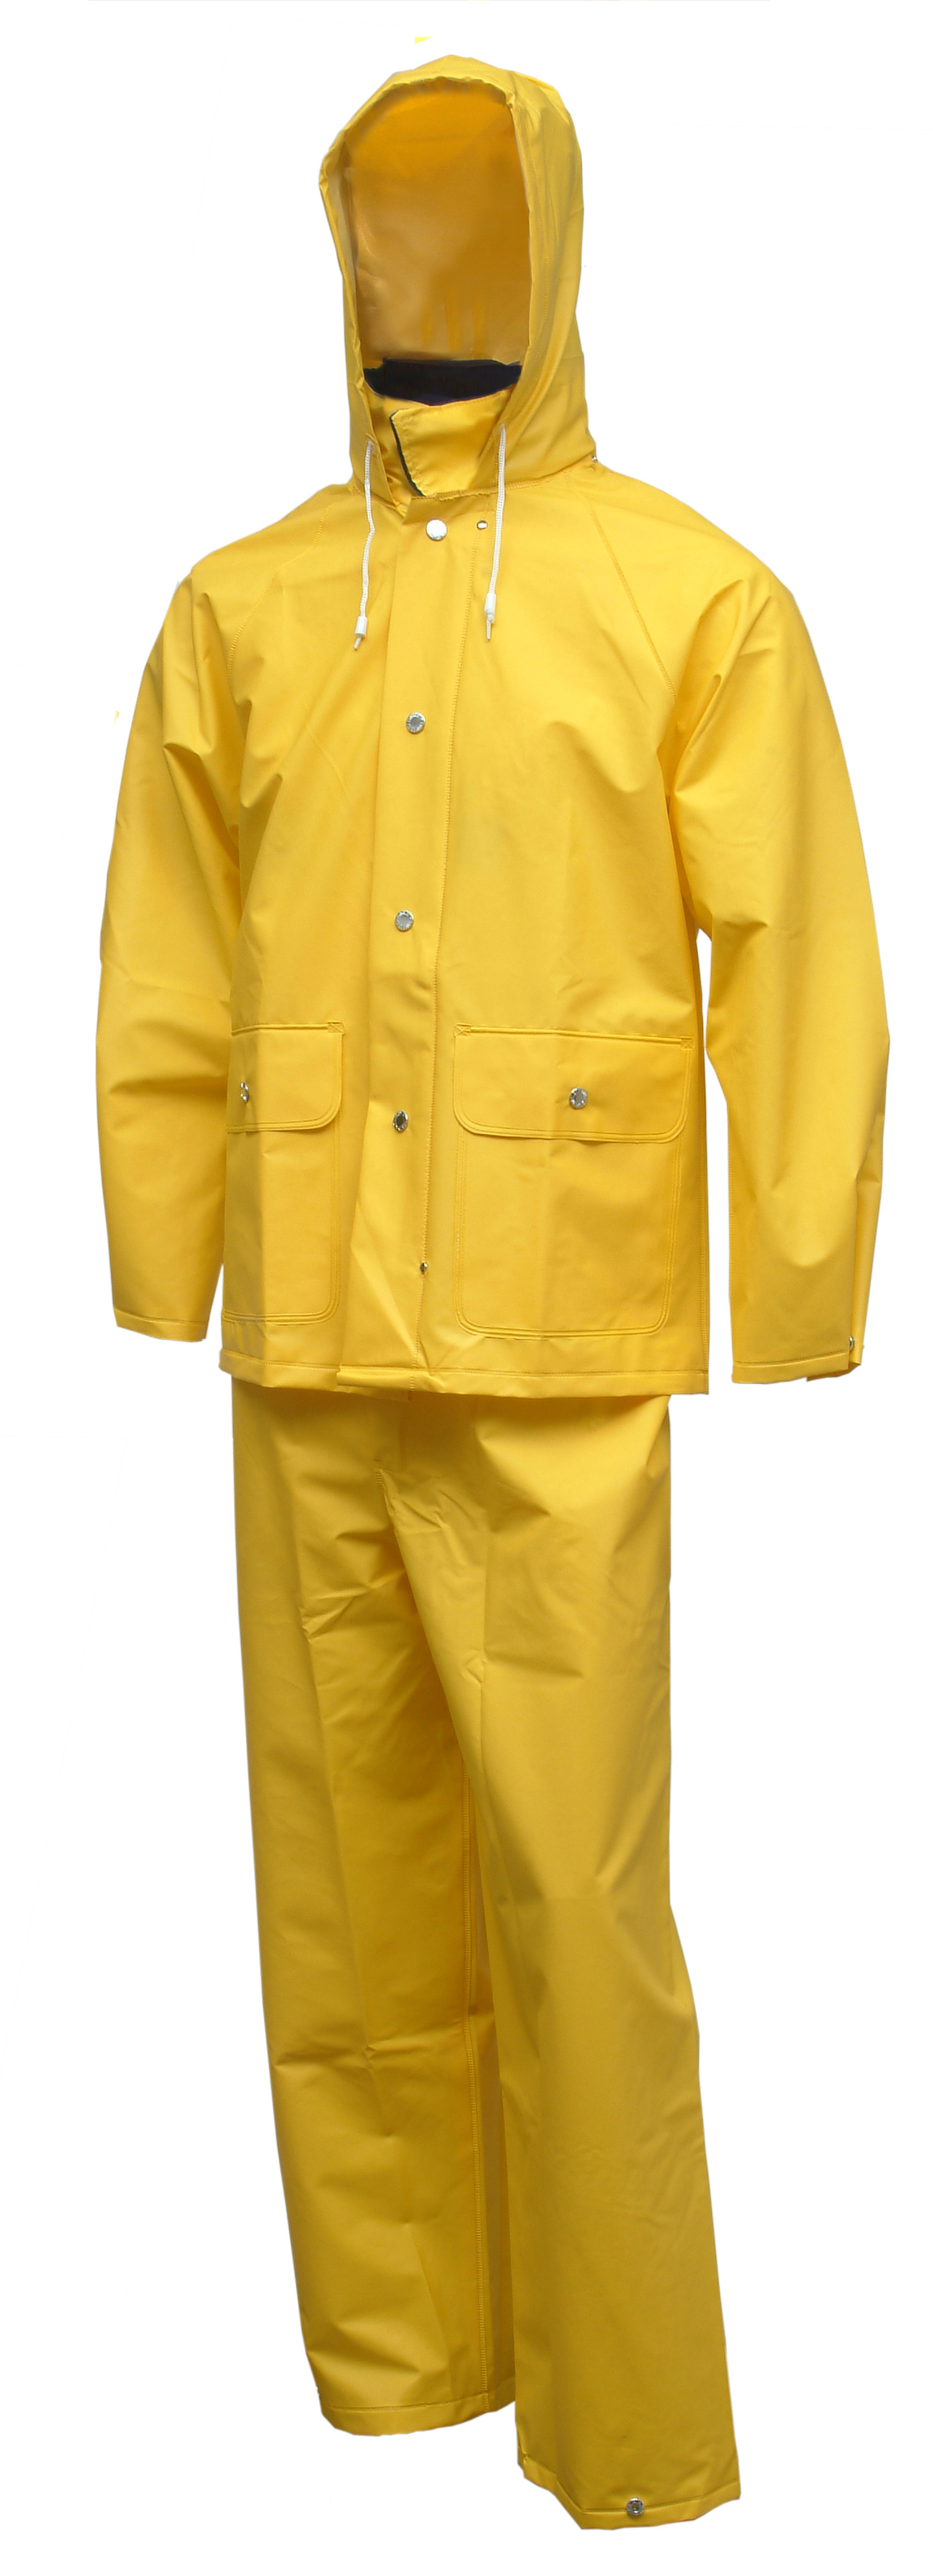 Industrial Yellow Work 3-Piece Rain Suit